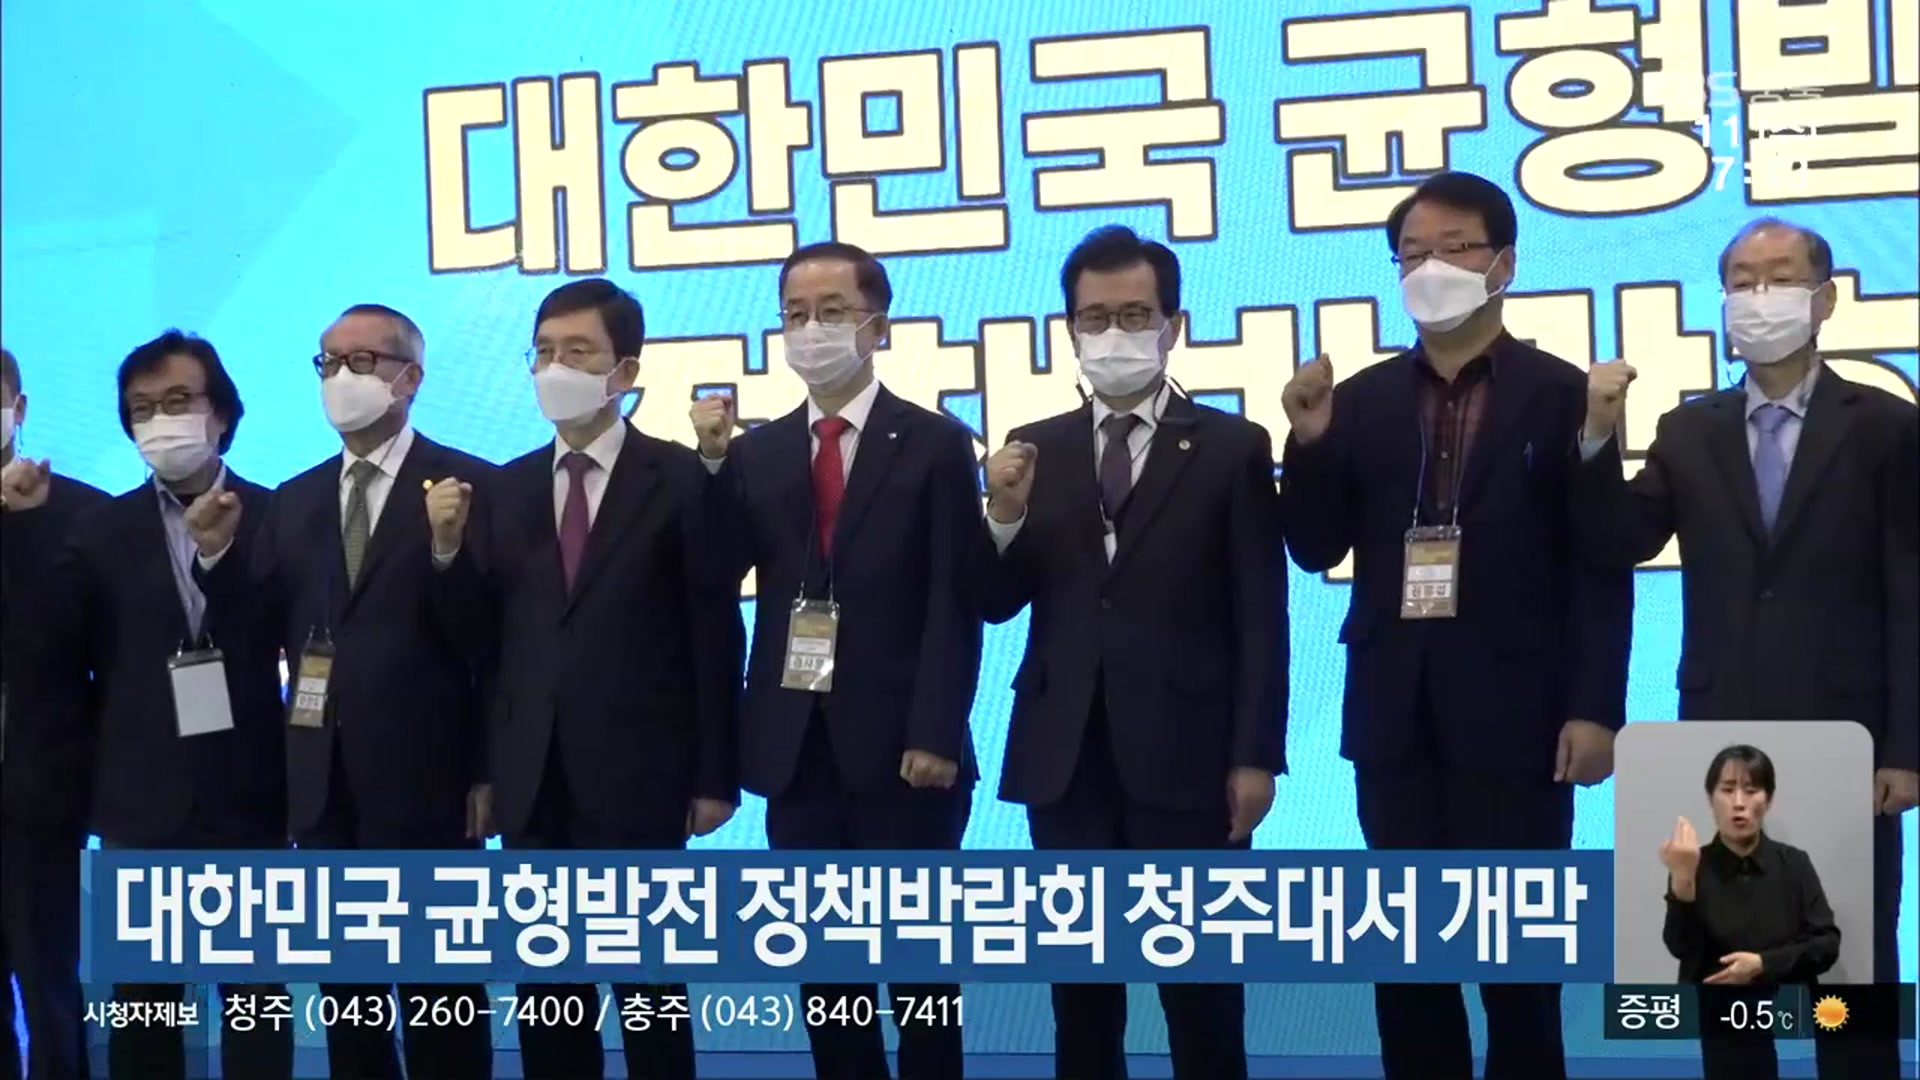 대한민국 균형발전 정책박람회 청주대서 개막